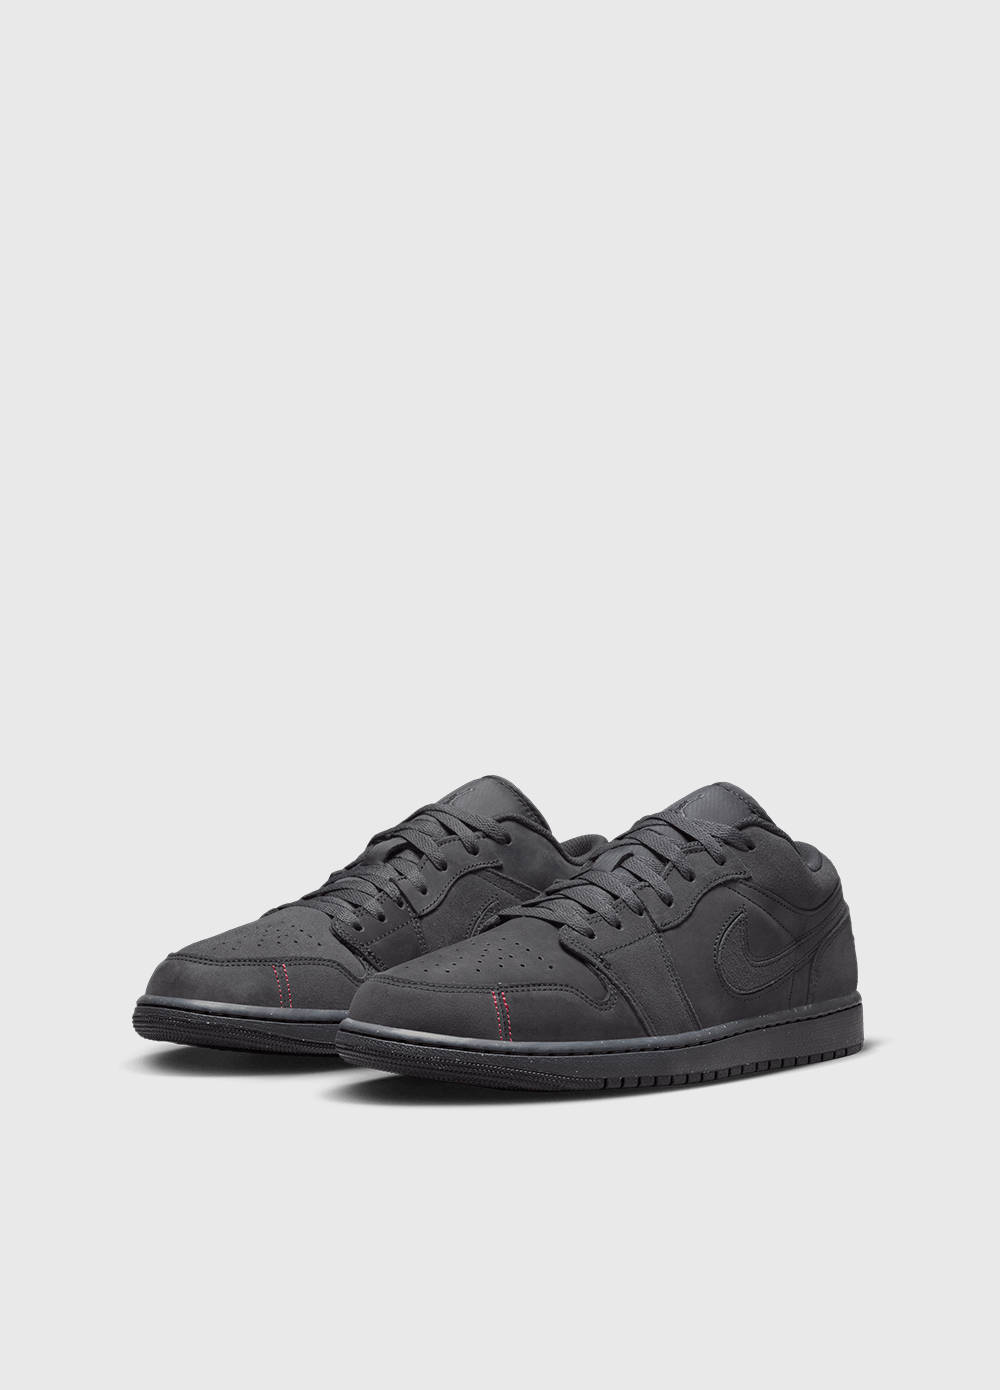 Air Jordan 1 Low SE Craft 'Dark Smoke' Sneakers